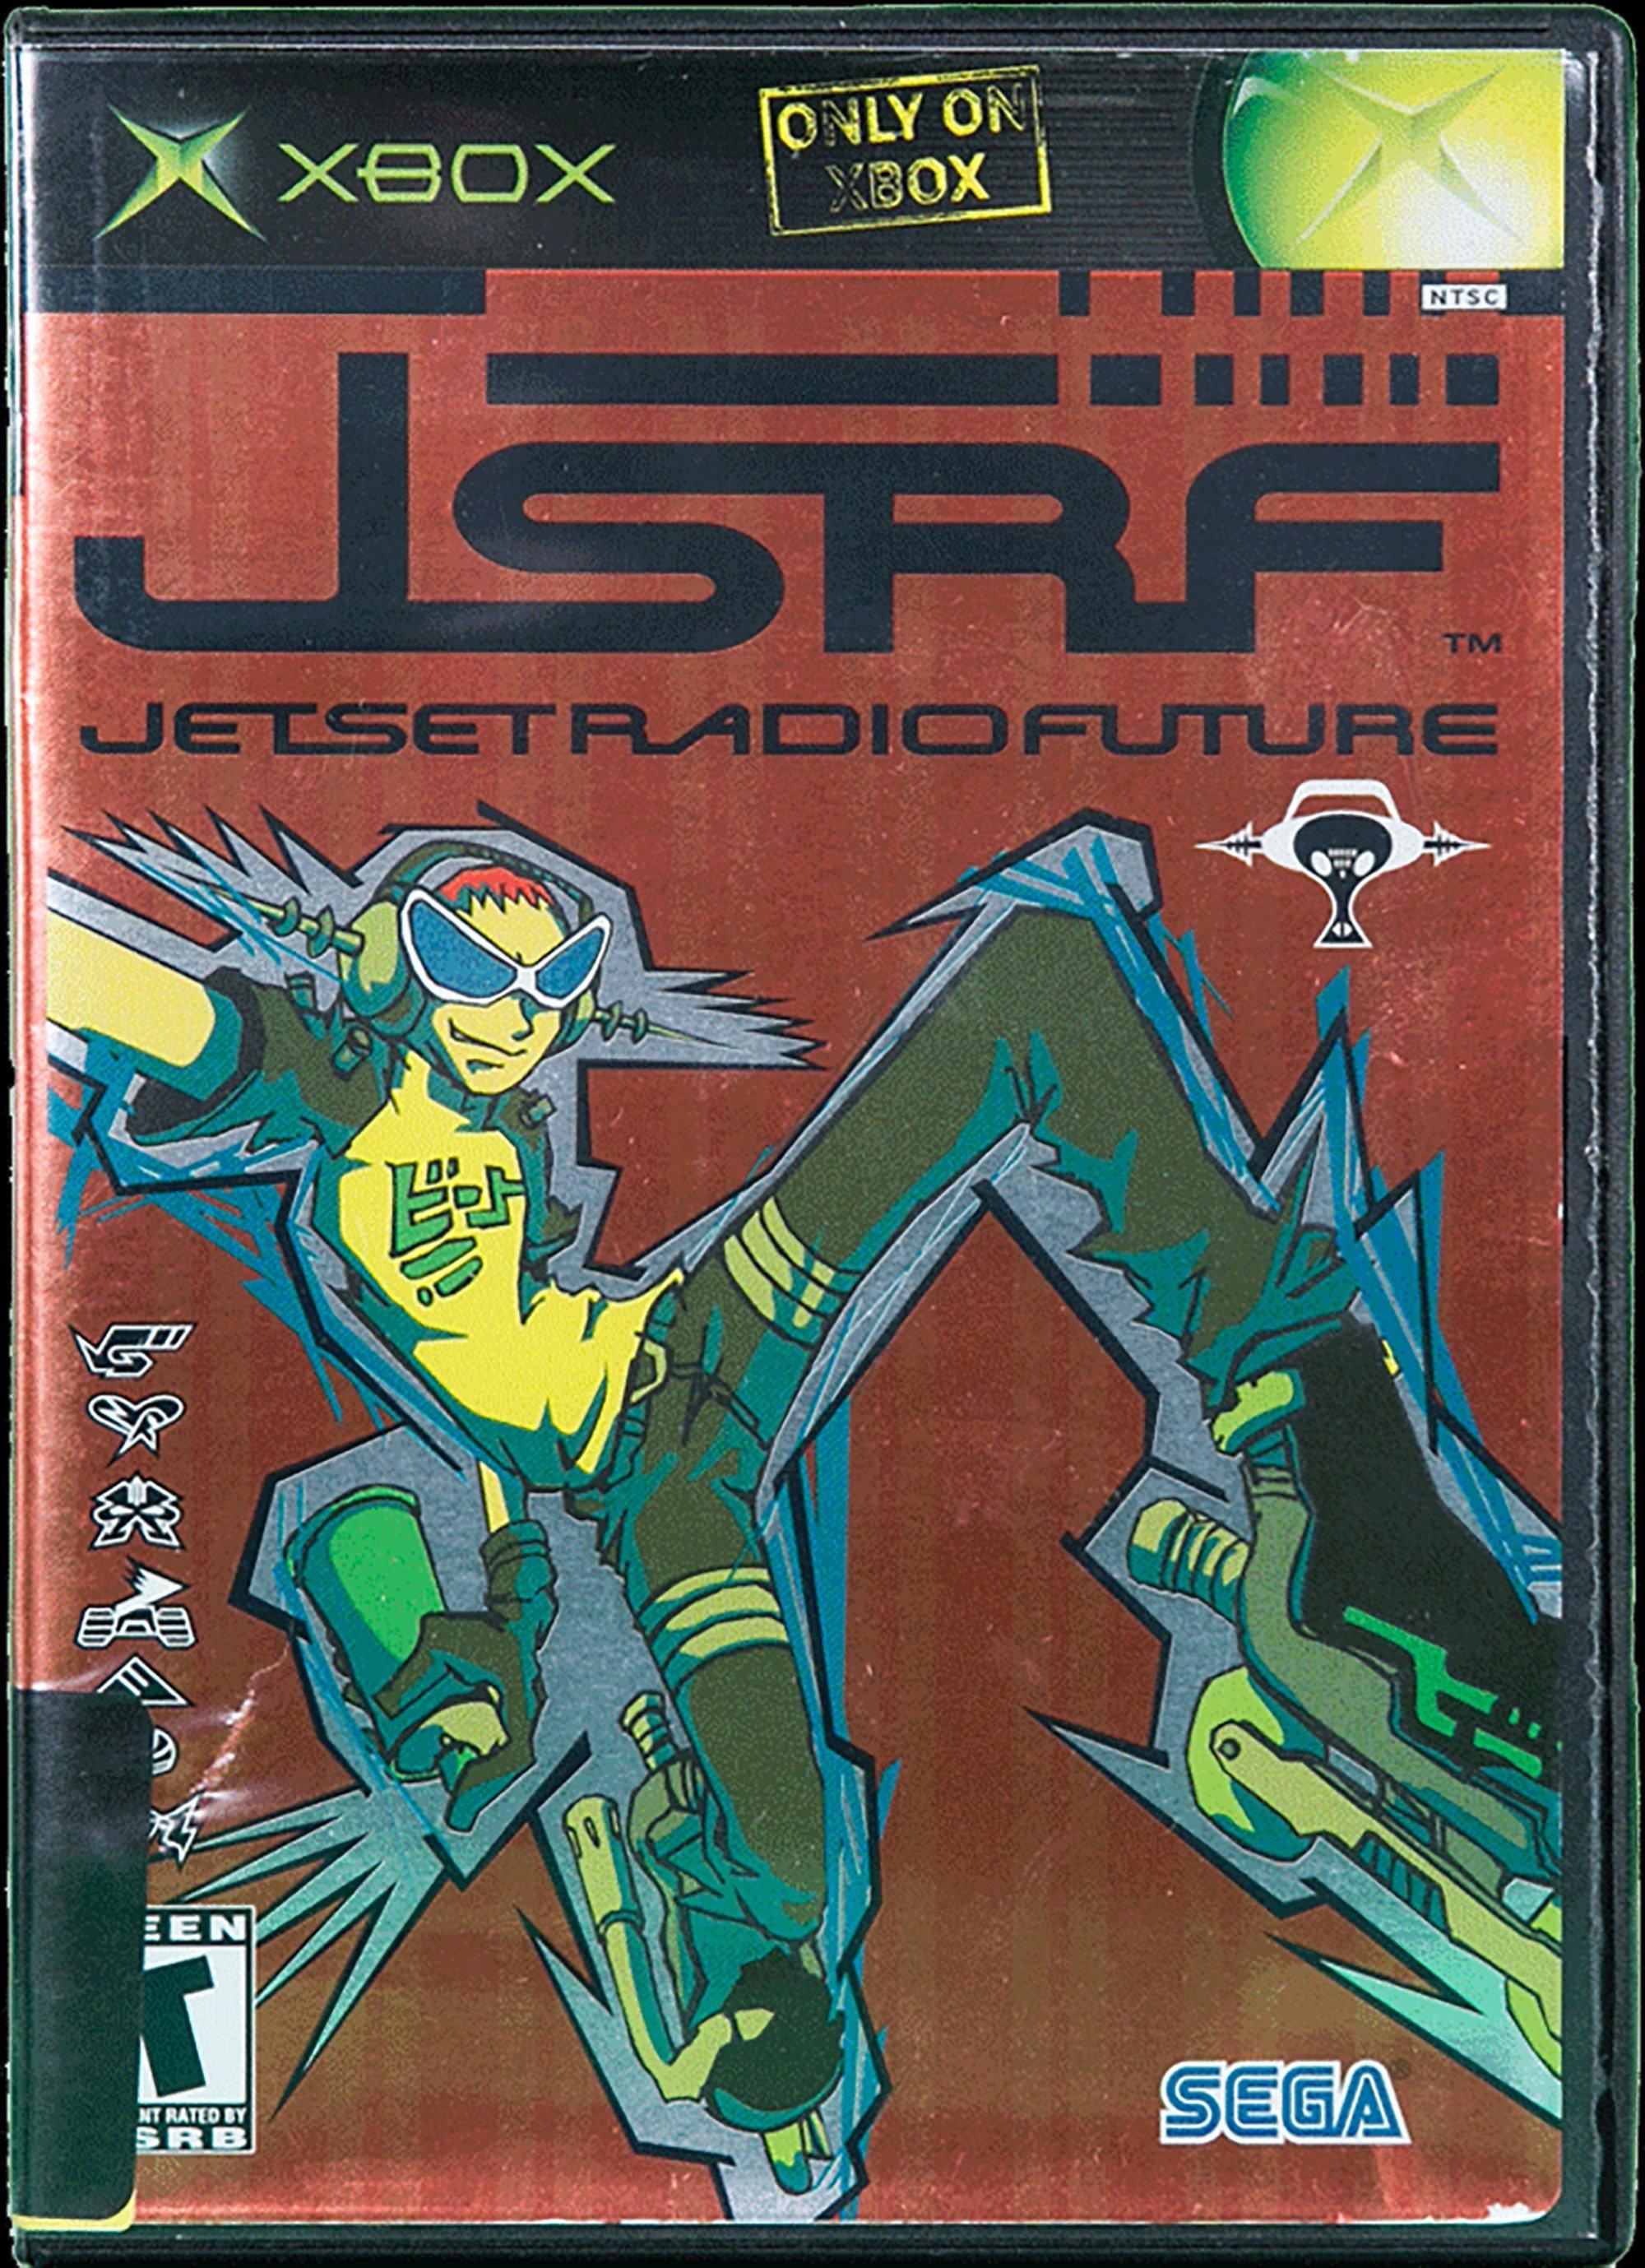 jet set radio future backwards compatible xbox one